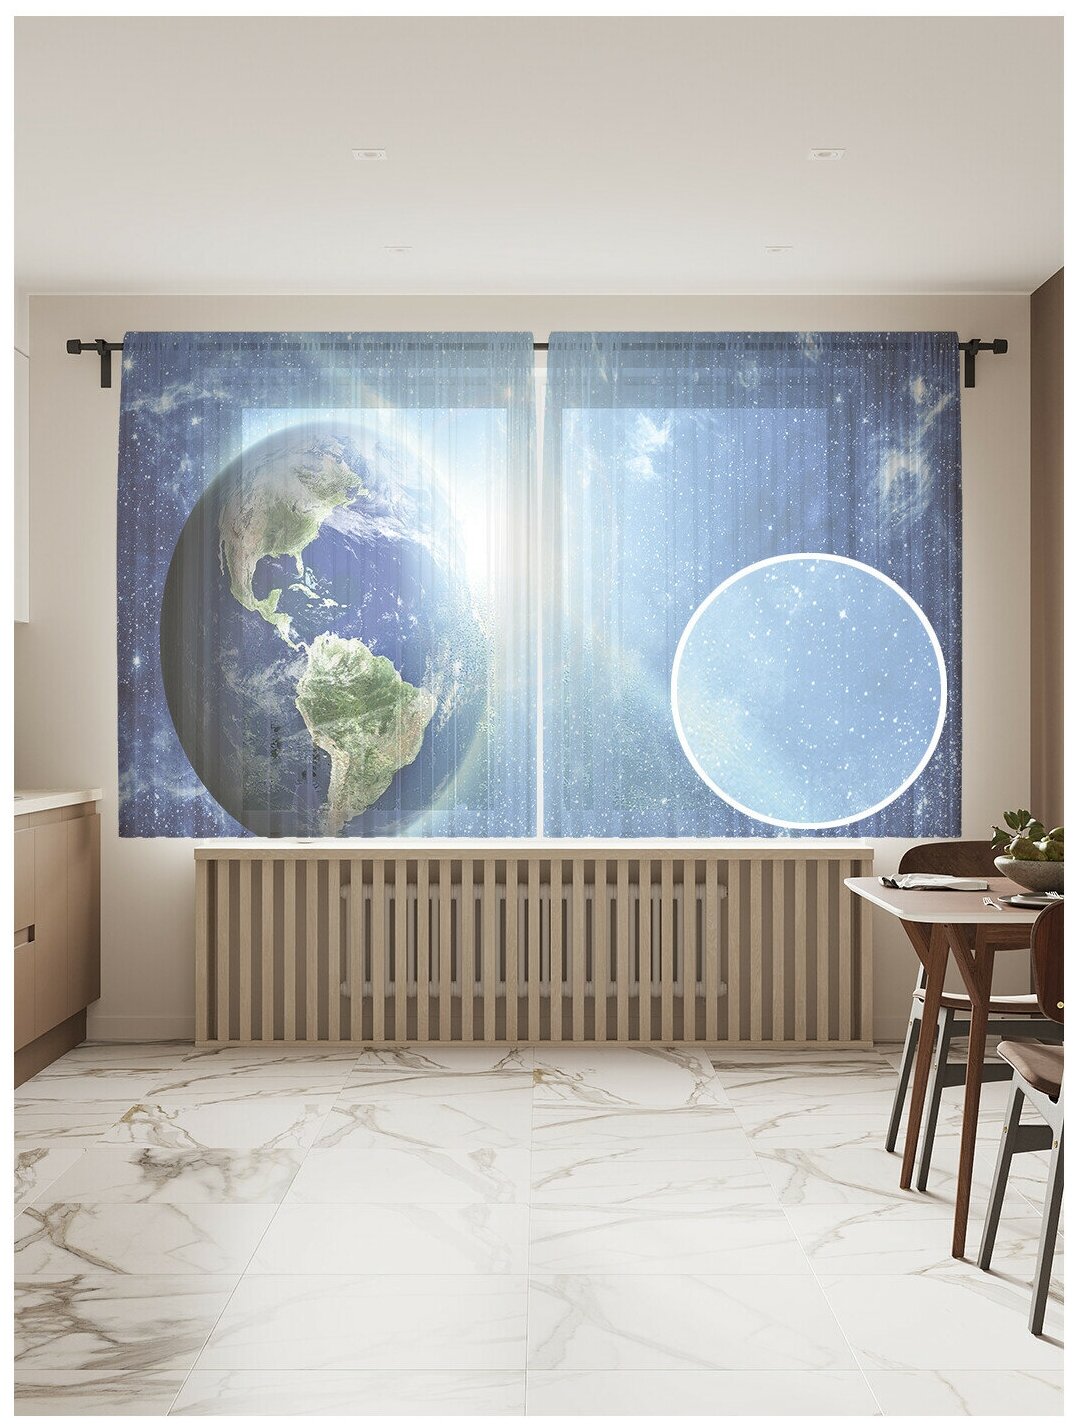 Тюль, фототюль короткий JoyArty "Космический свет" высота 180 см, ширина 145 см (2 полотна) на шторной ленте, крючки в комплекте